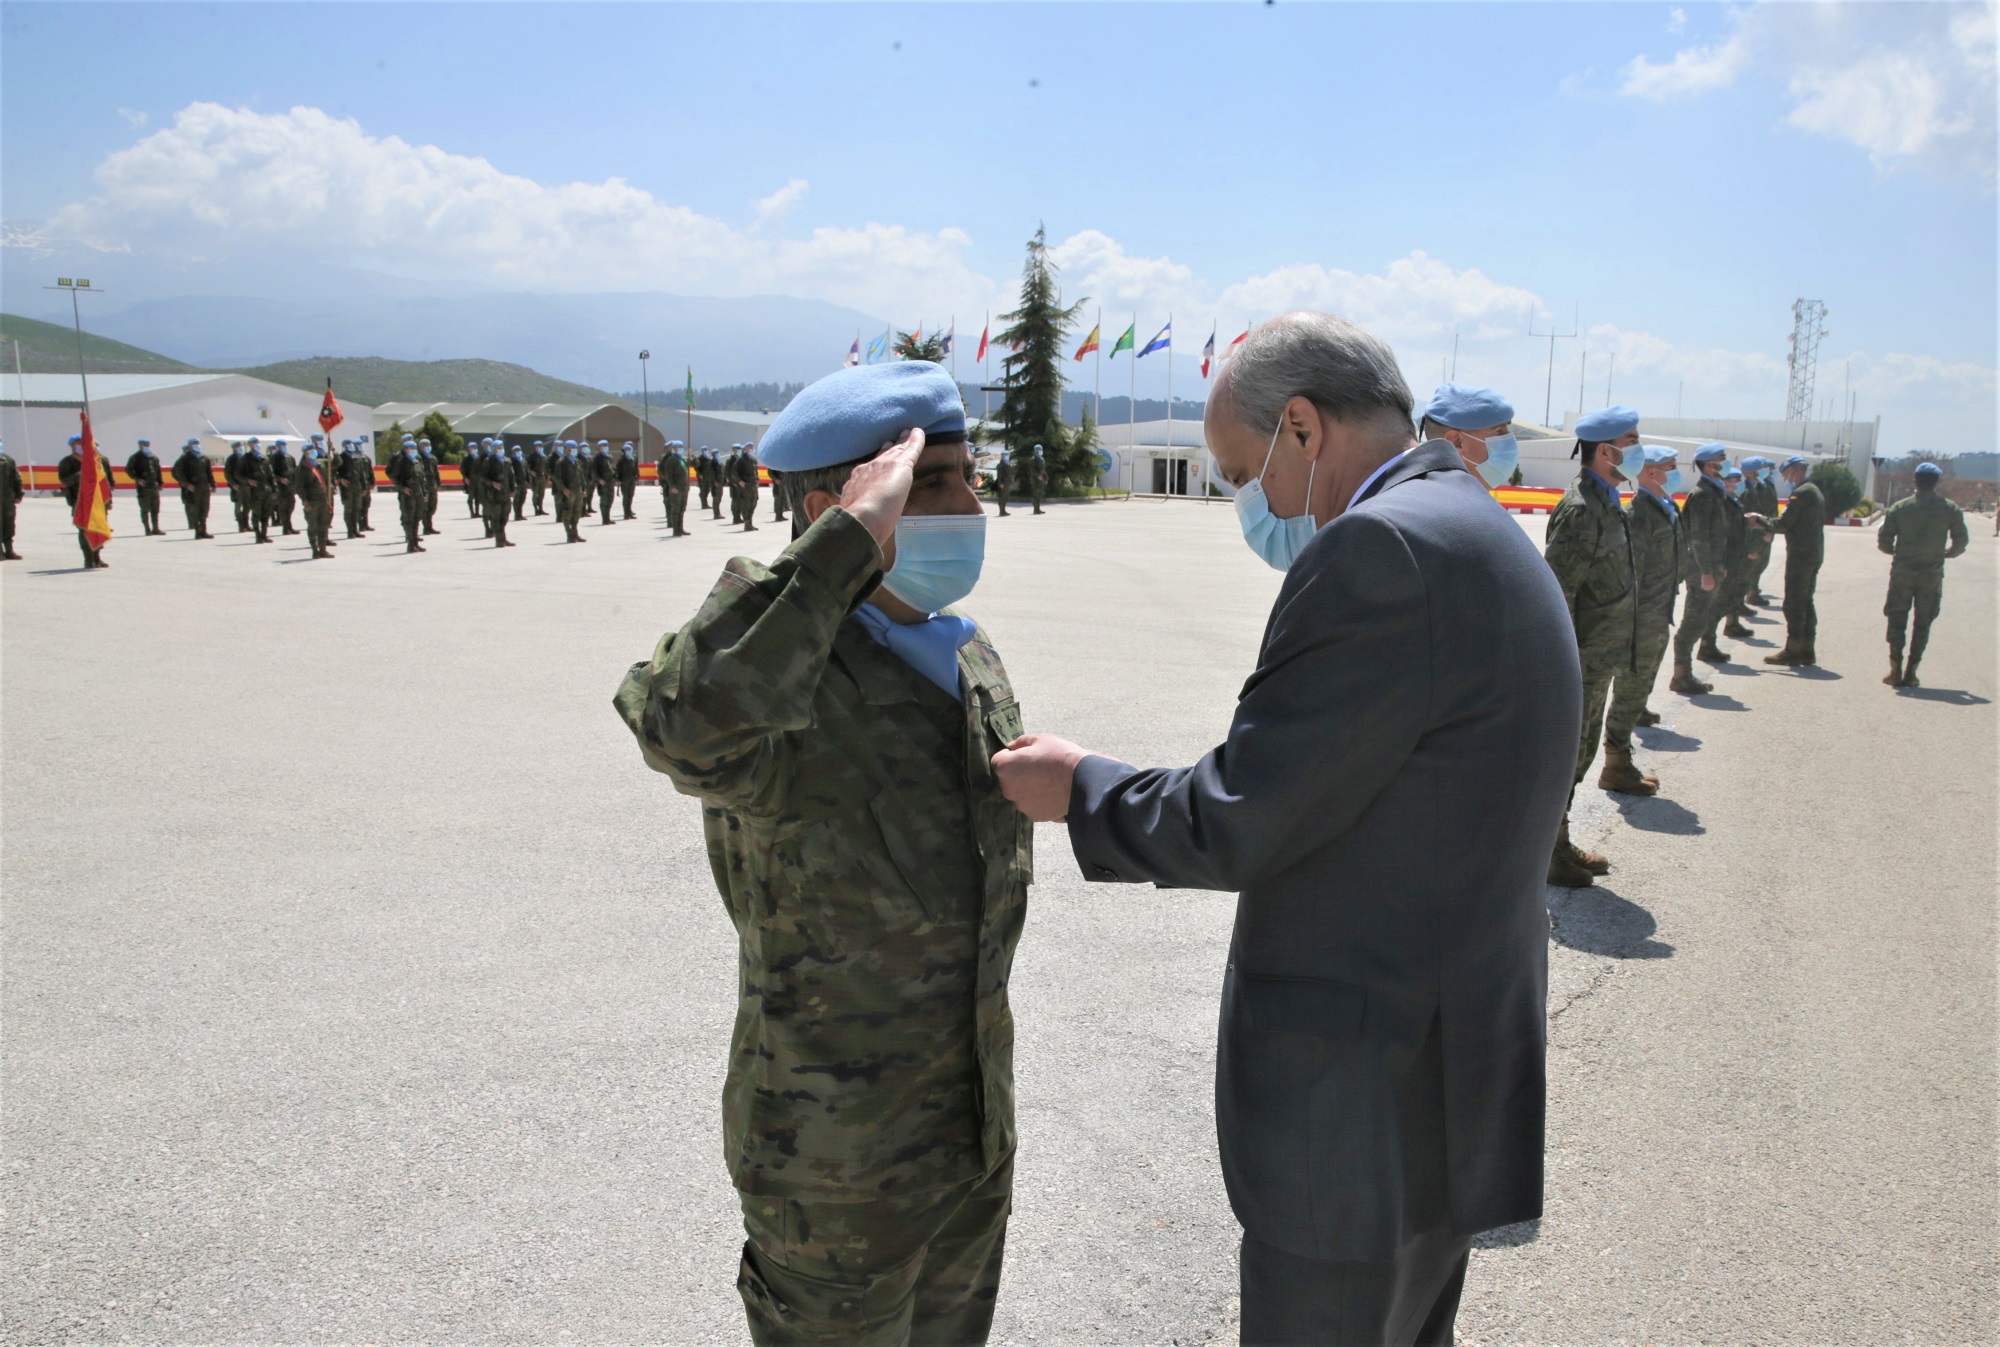  El embajador español imponiendo la medalla a un oficial de la Guardia Civil